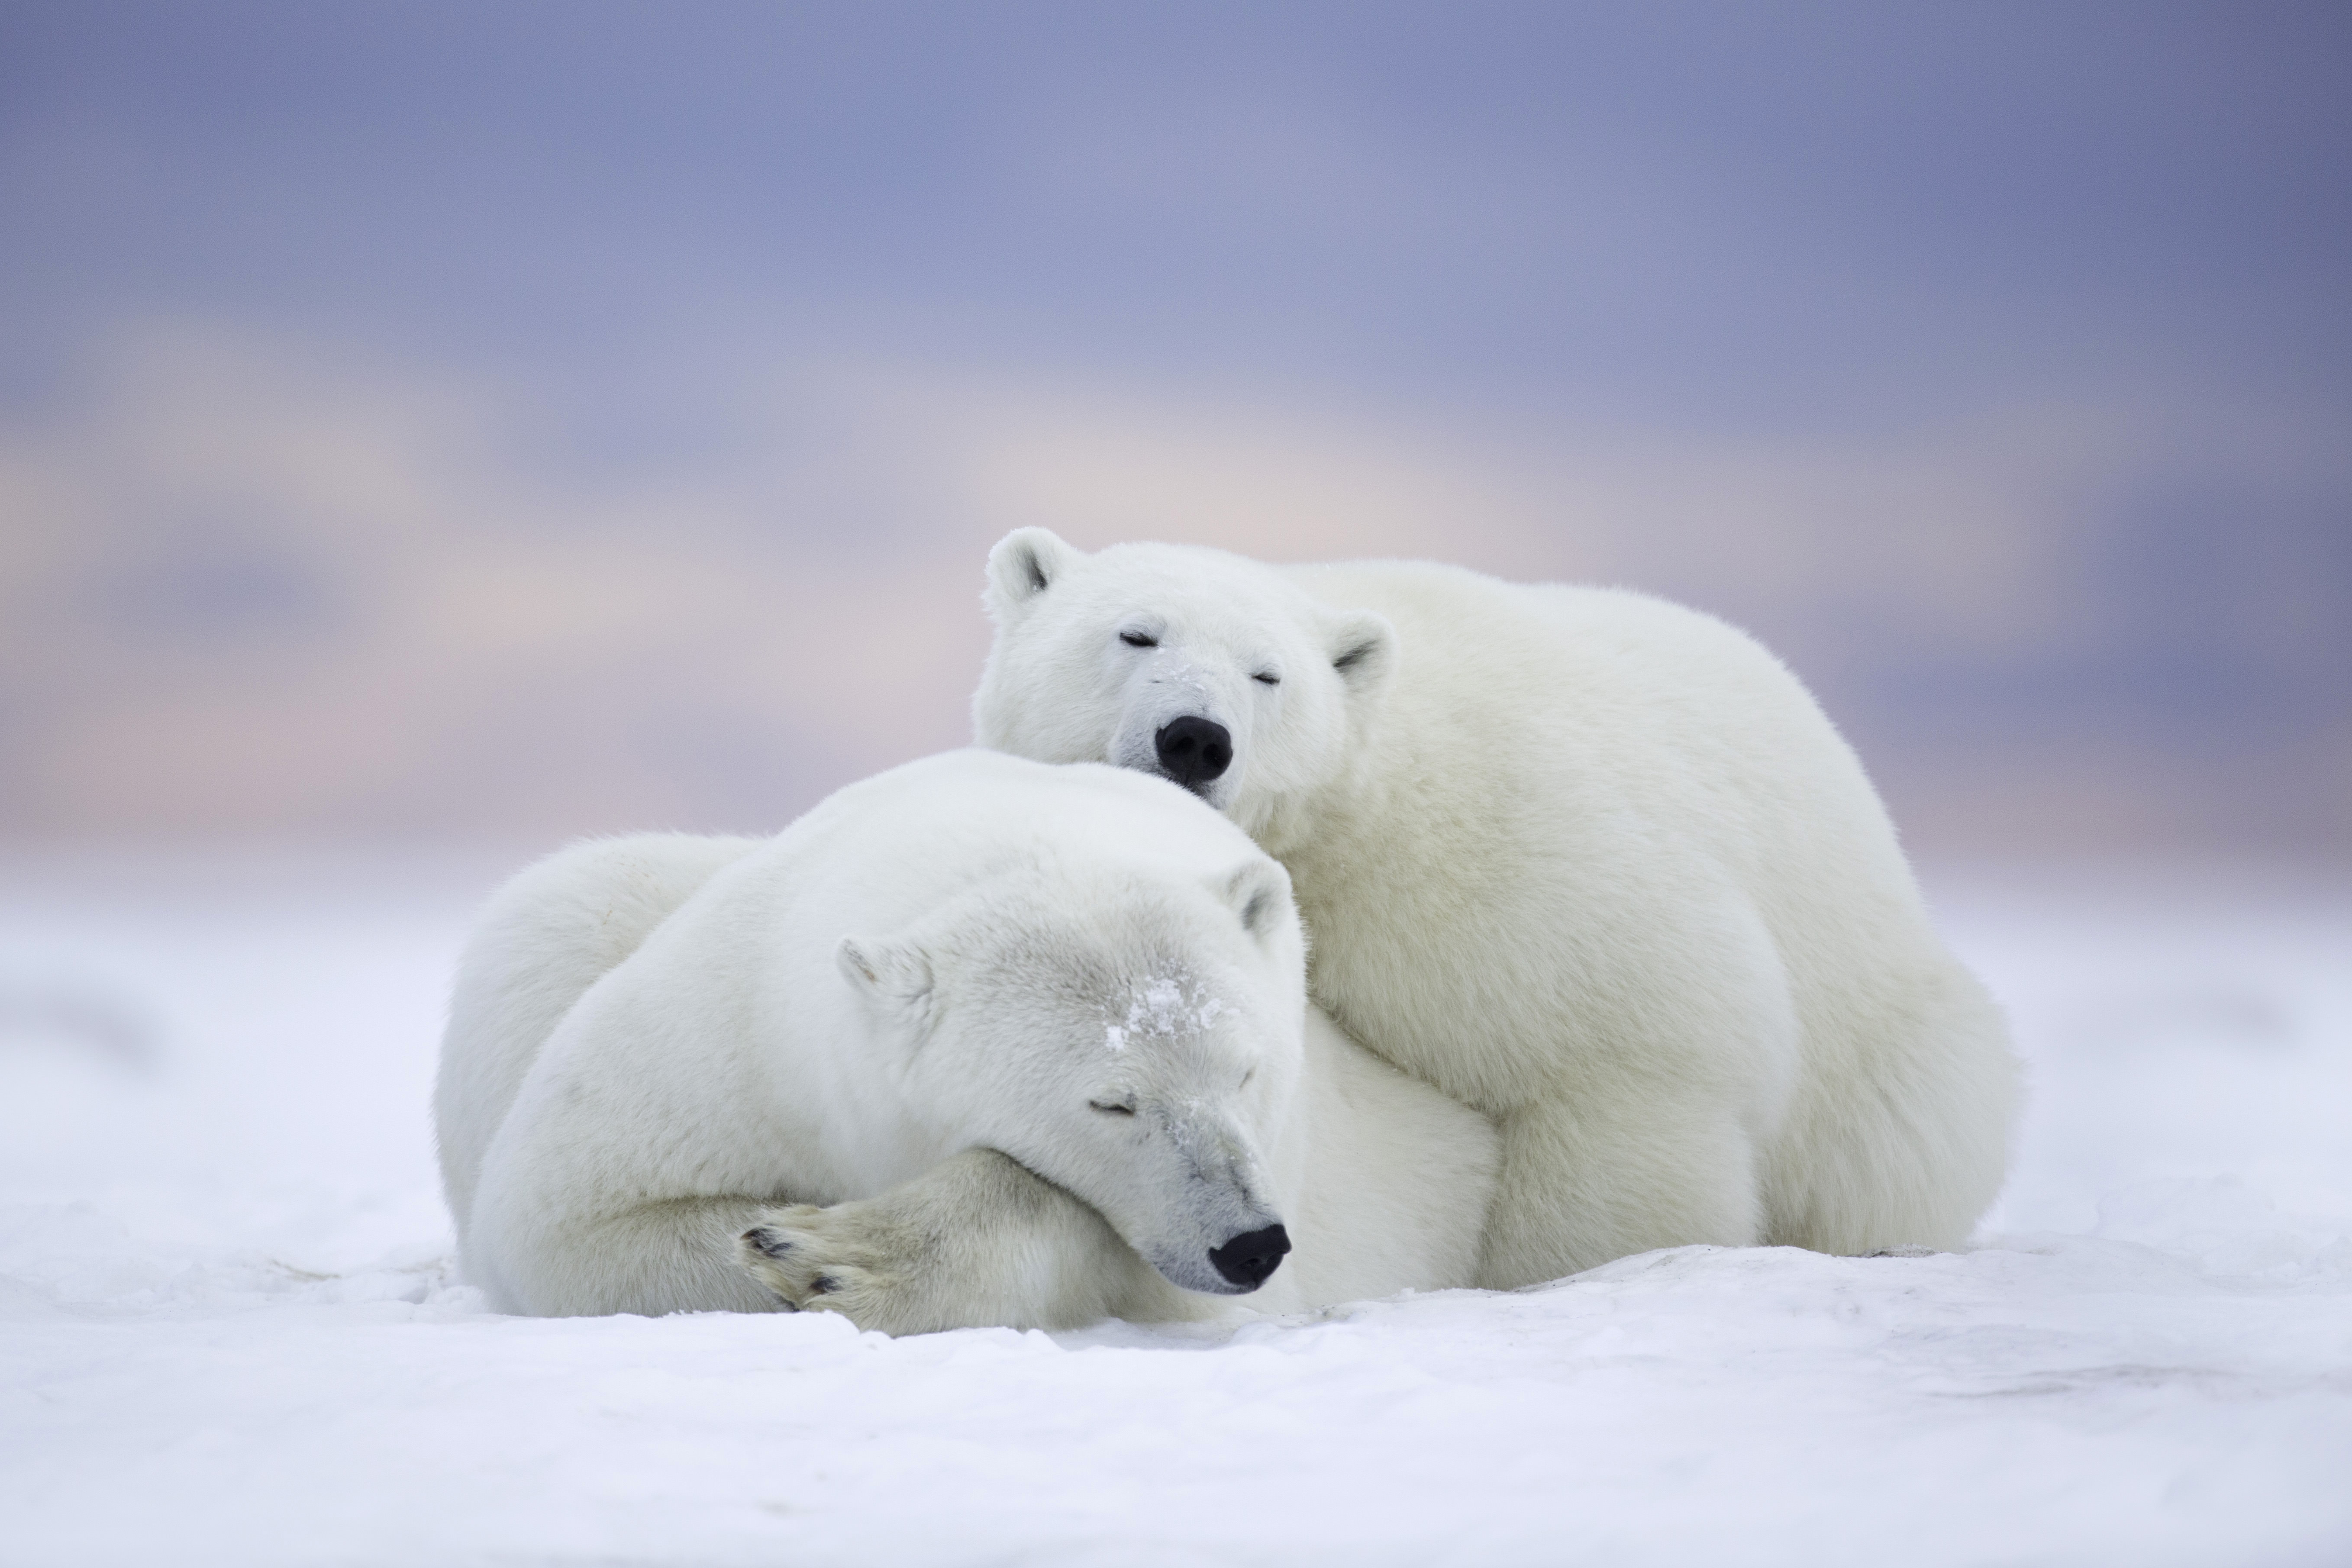 Обои холодный климат белый медведь на рабочий стол